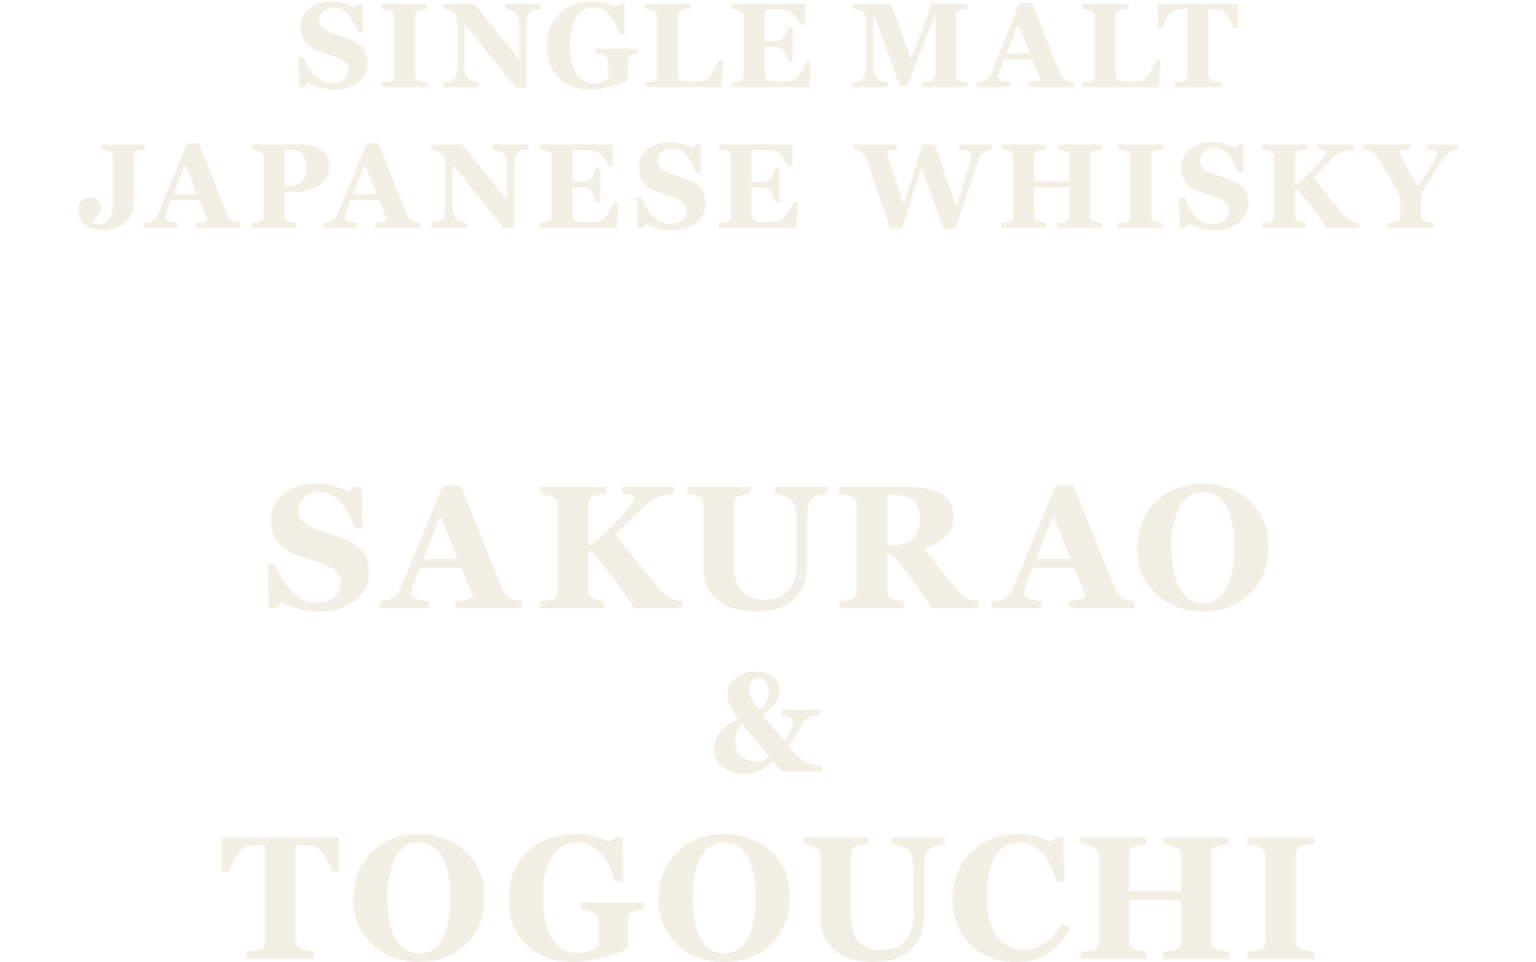 SINGLE MALT JAPANESE WHISKY SAKURAO & TOGOUCHI